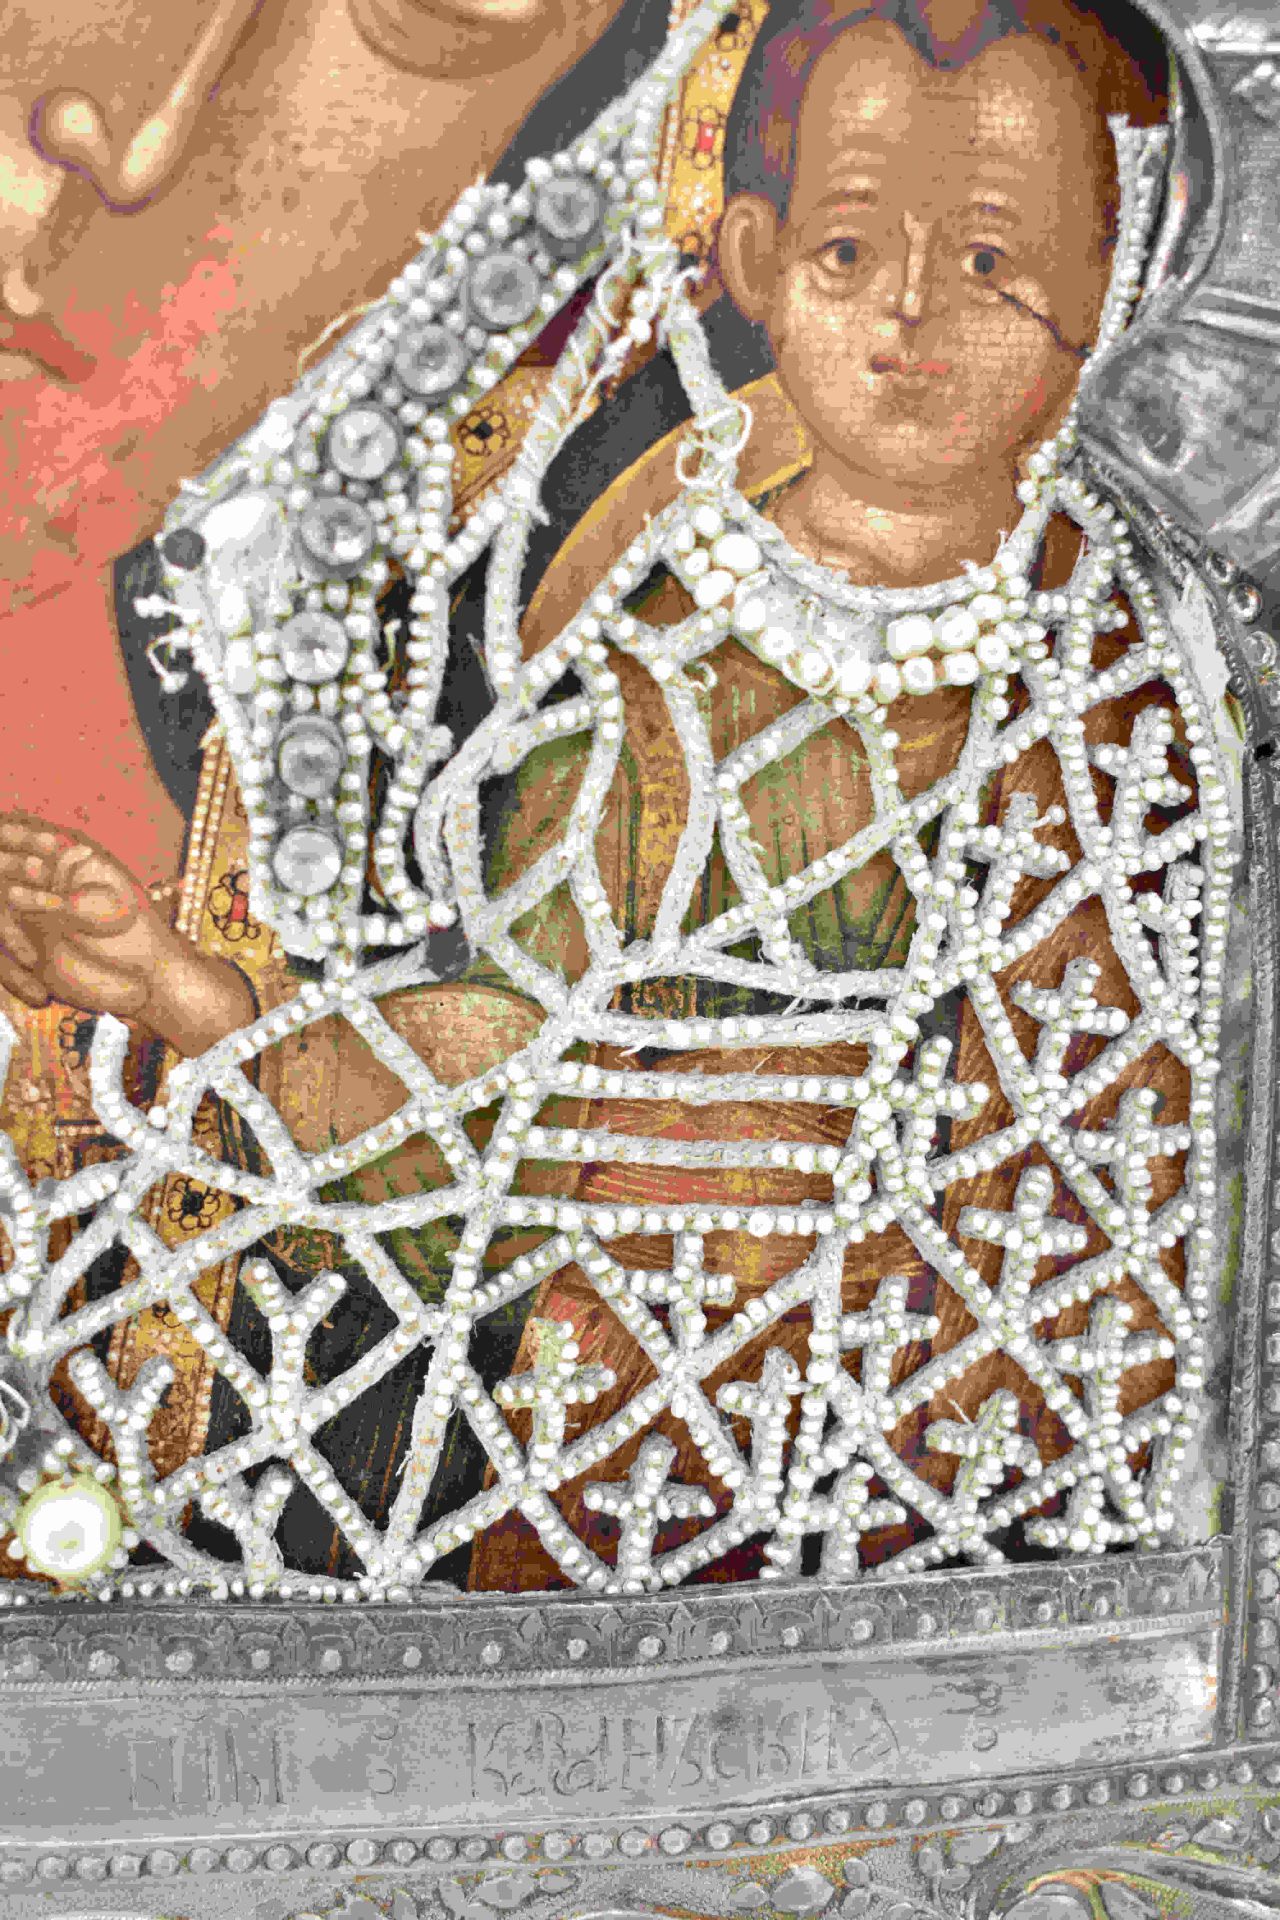 Marienikone mit Perlkleid und Silberoklad, St. Petersburg, frühes 19. Jh. - Bild 14 aus 18